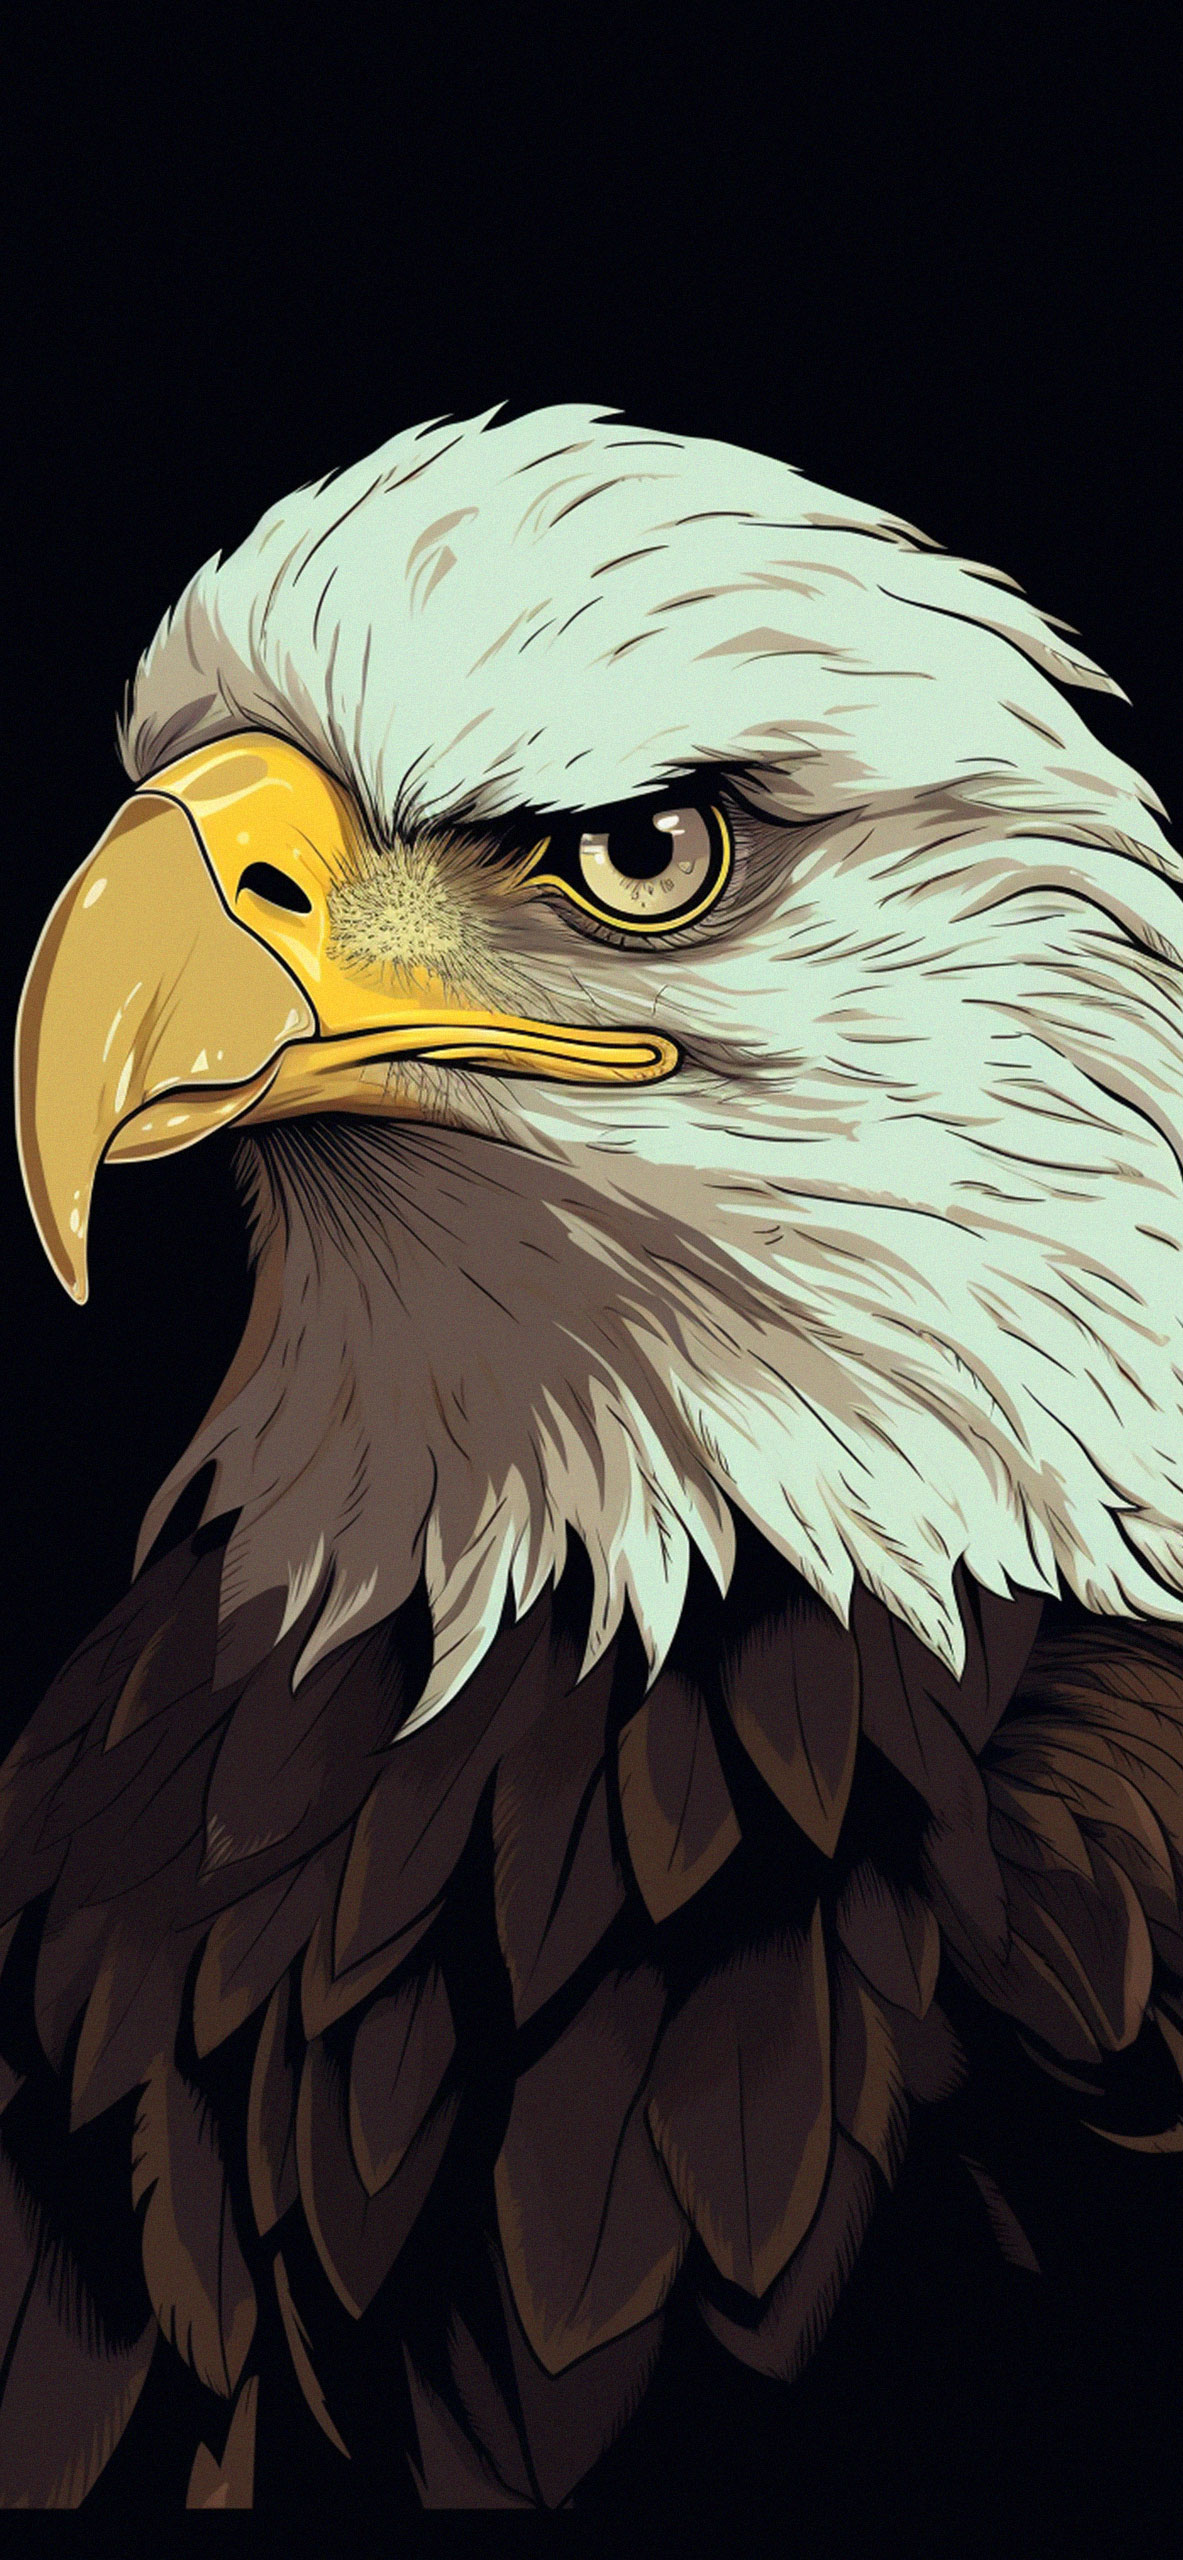 49 Patriotic Eagle Wallpapers Free  WallpaperSafari